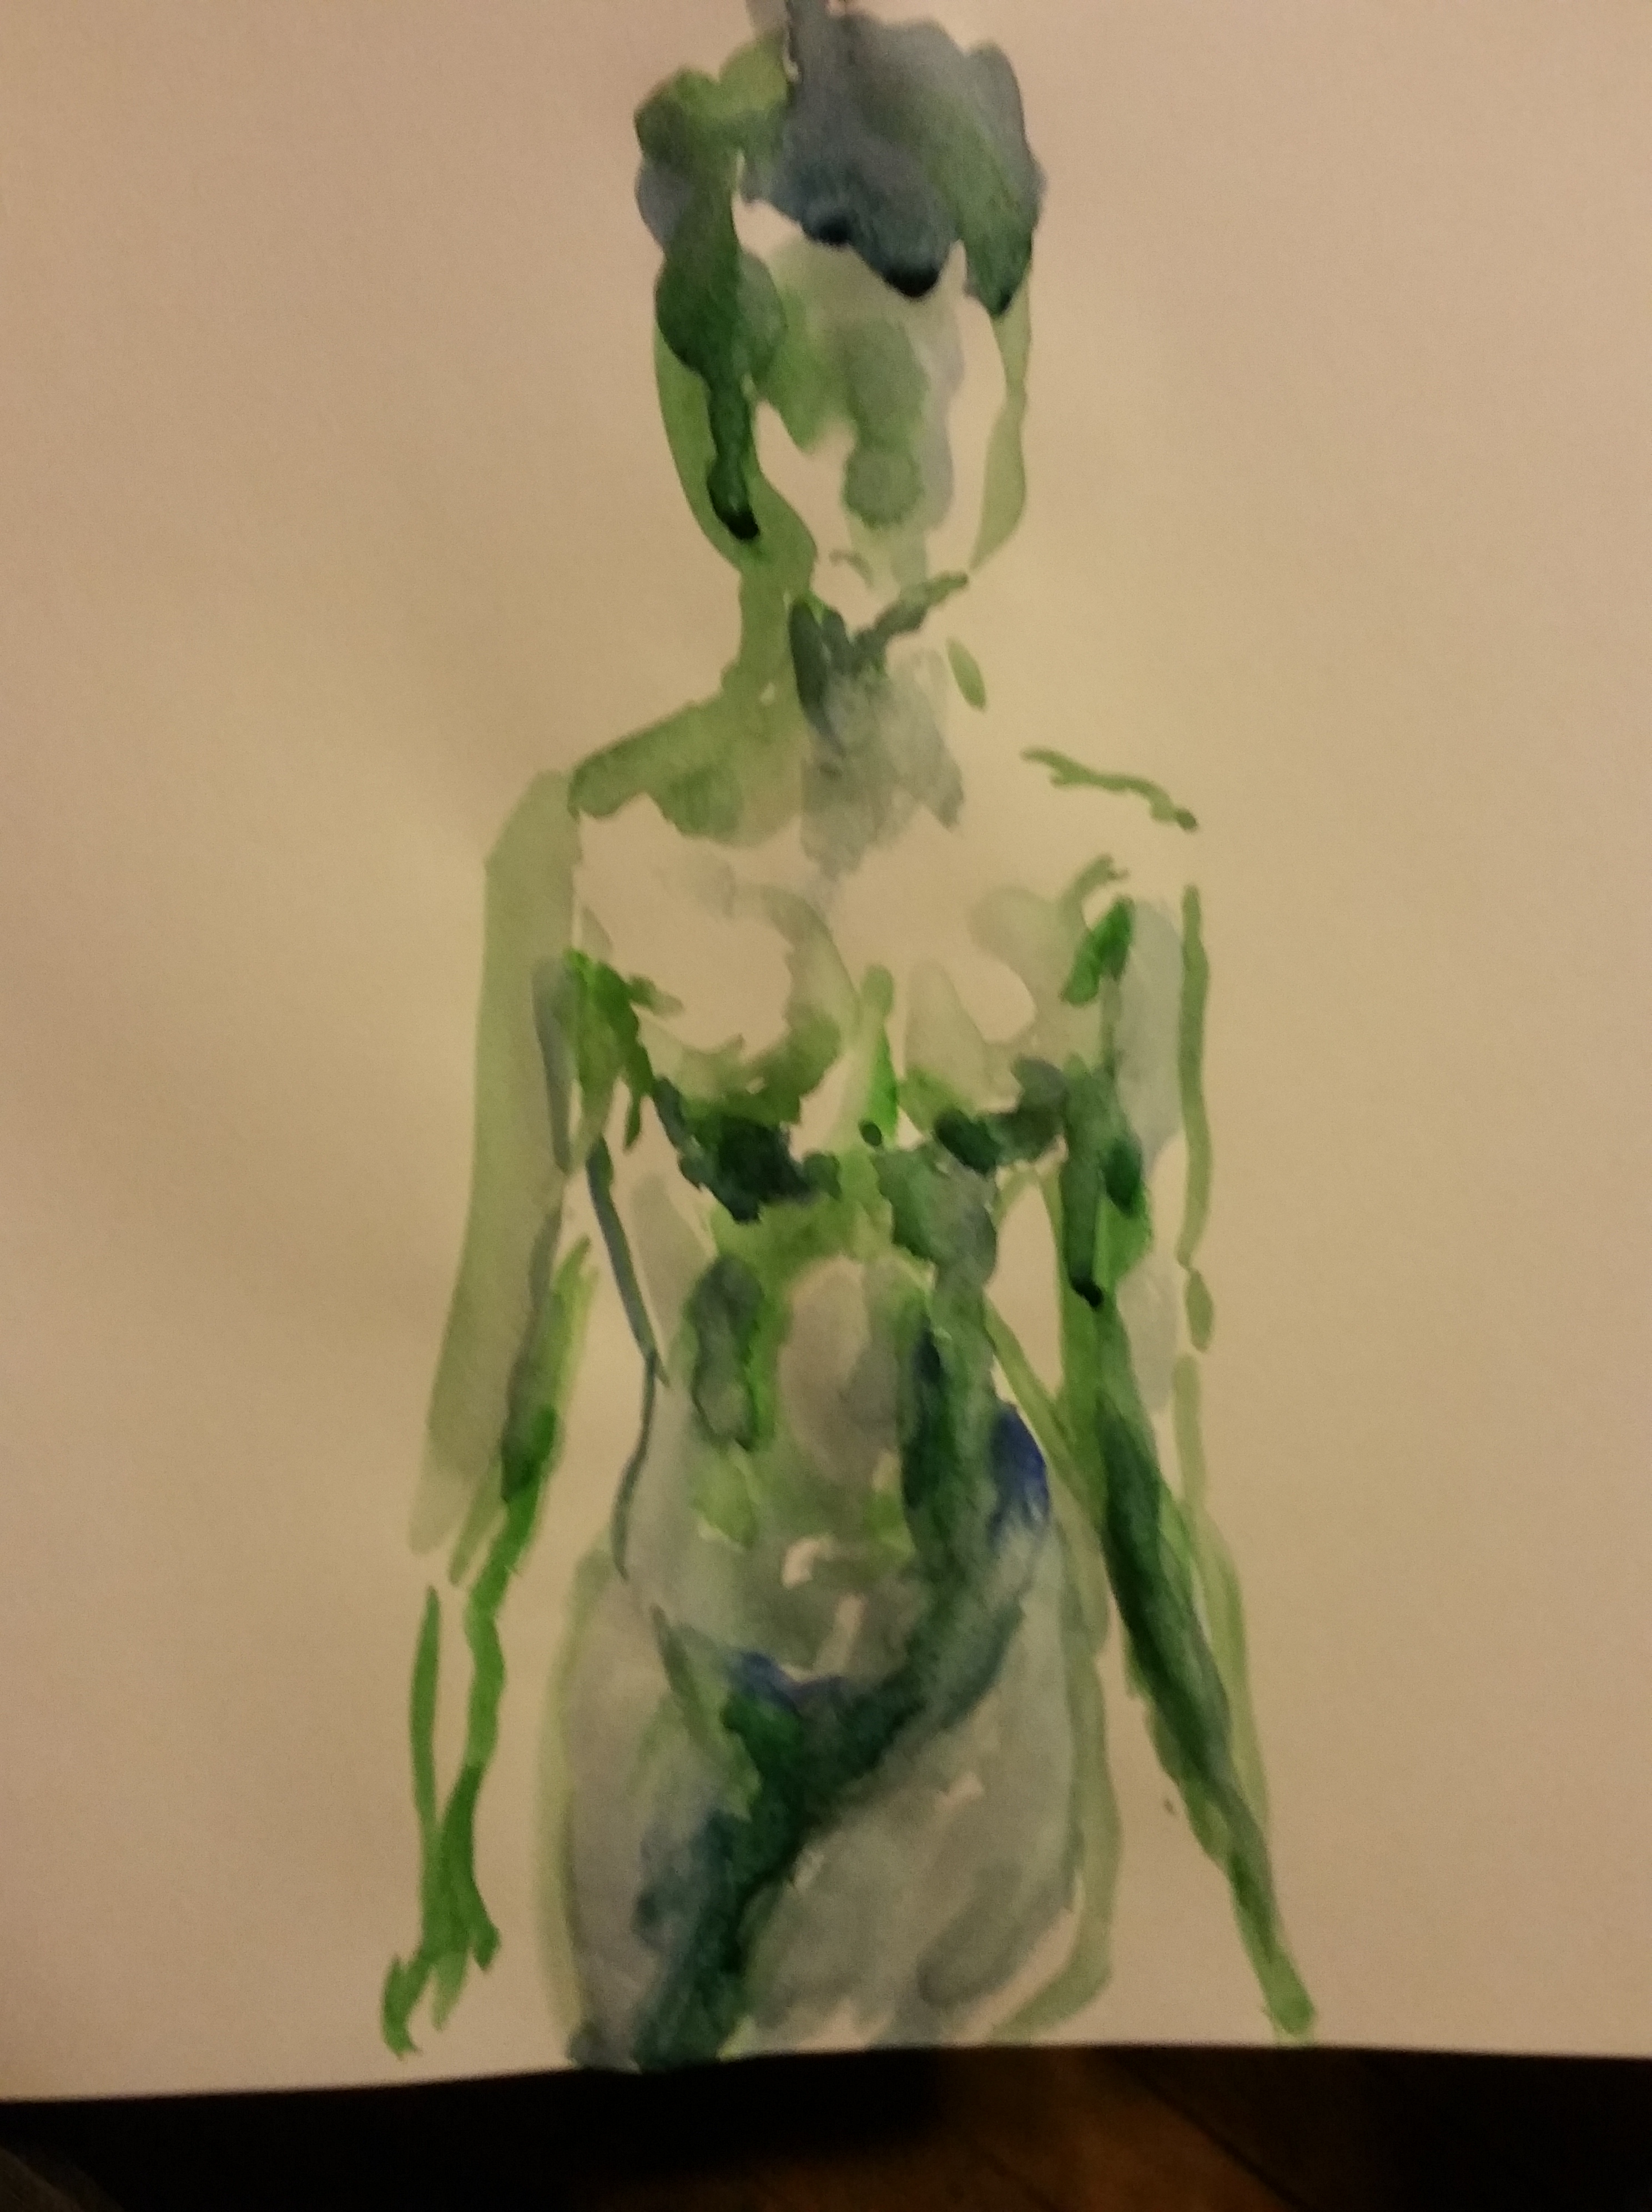  Dessin aquarelle sur papier femme face vert  cours de dessin 